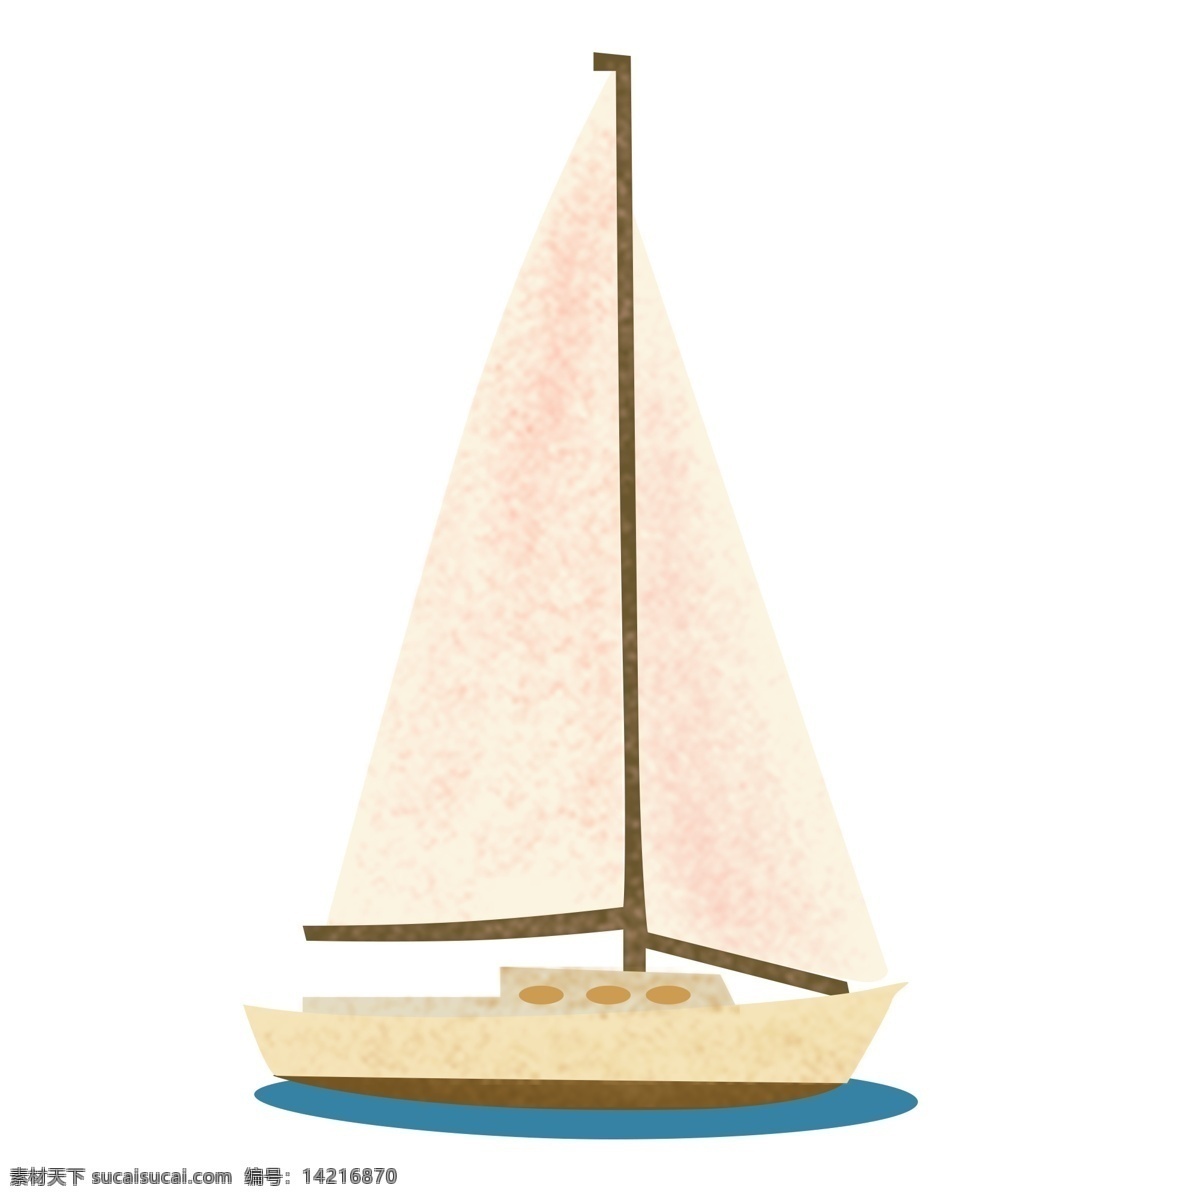 简约 小船 装饰 图案 船只 帆船 卡通 彩色 水彩 创意 手绘 绘画元素 现代